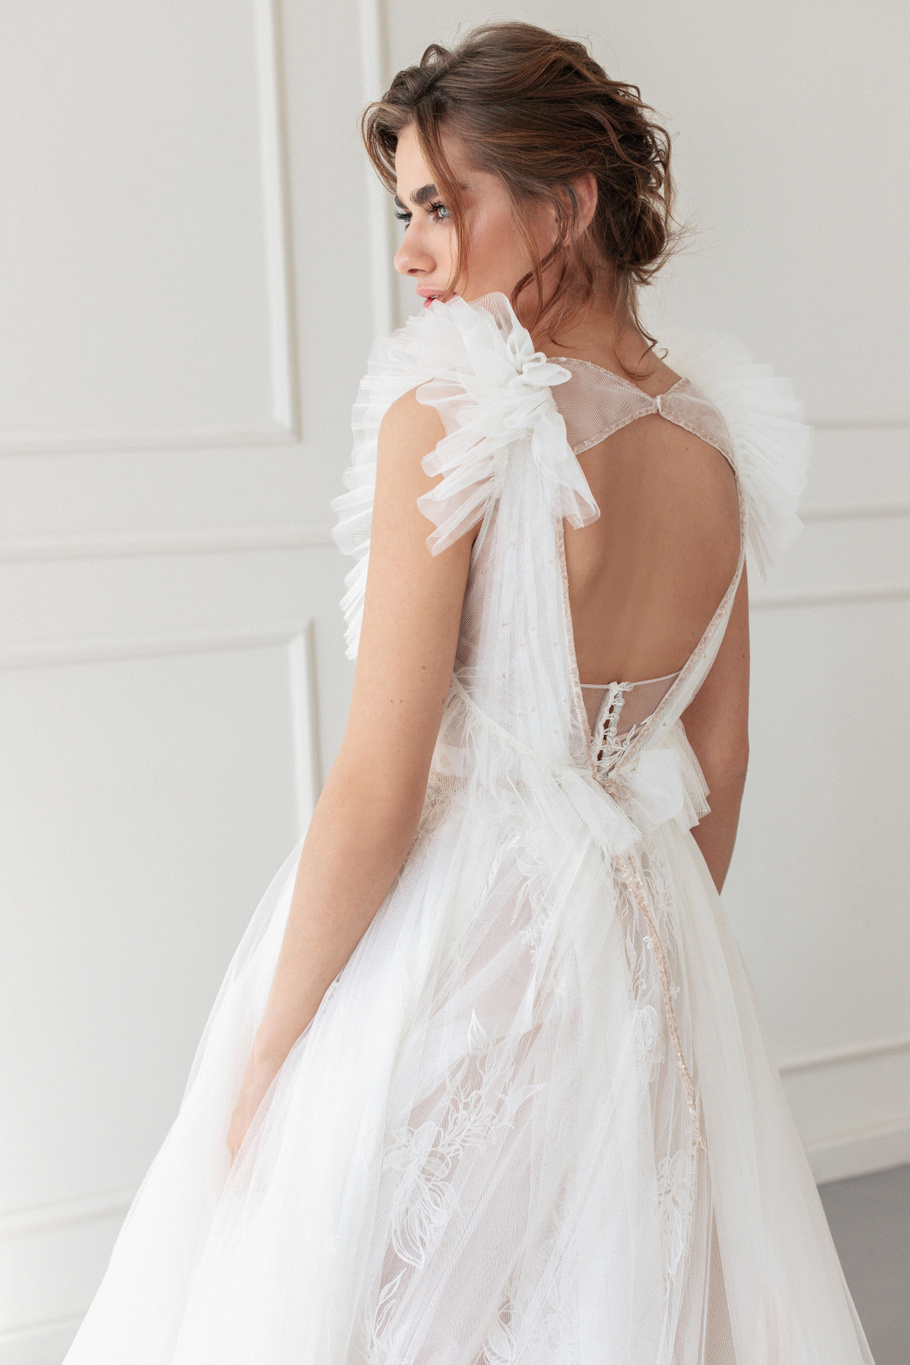 Купить свадебное платье «Кассиопея+Лео» Анже Этуаль из коллекции 2020 года в салоне «Мэри Трюфель»